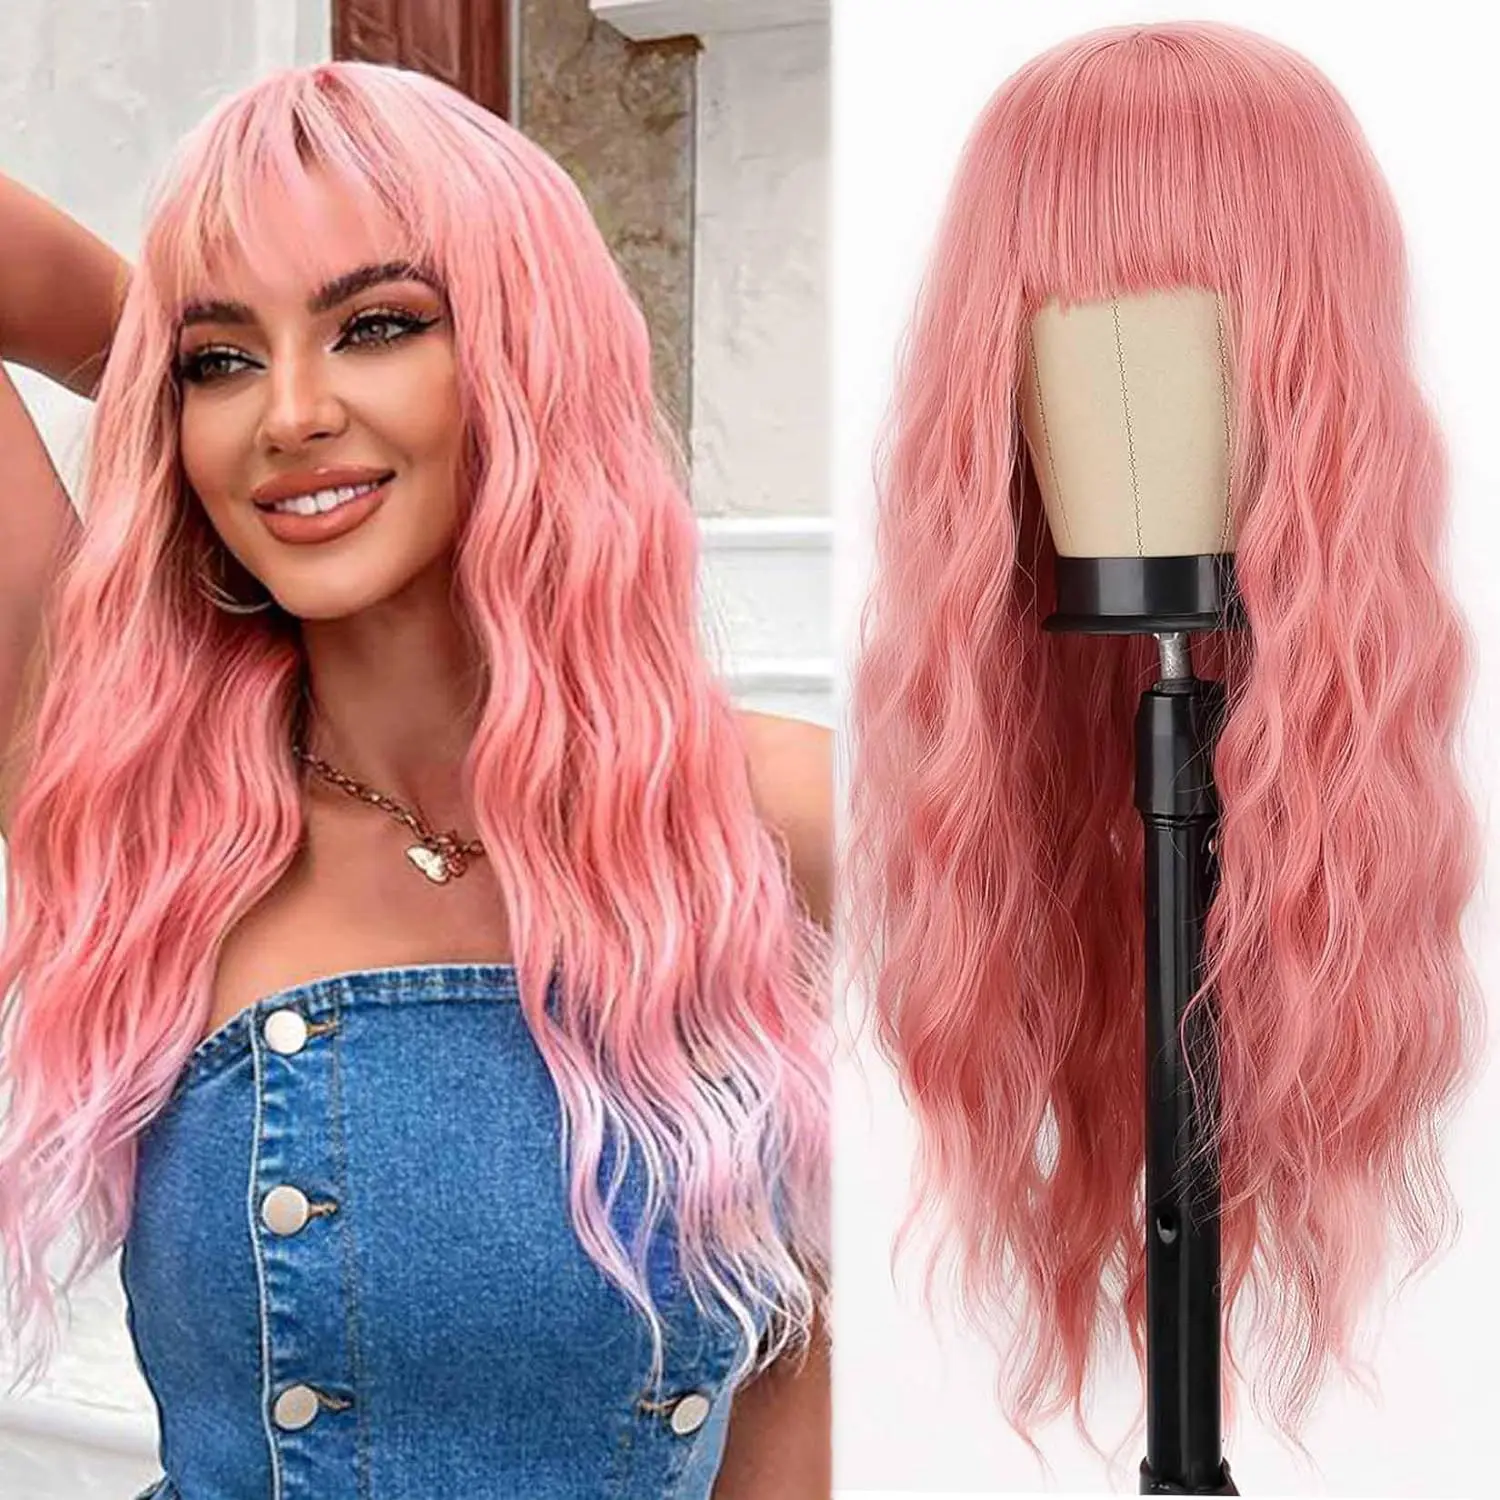 Peluca de cabello humano rosa con flequillo suave largo ondulado para mujer, peluca de pelo vietnamita crudo rizado, disfraces, pelucas de fiesta de Cosplay